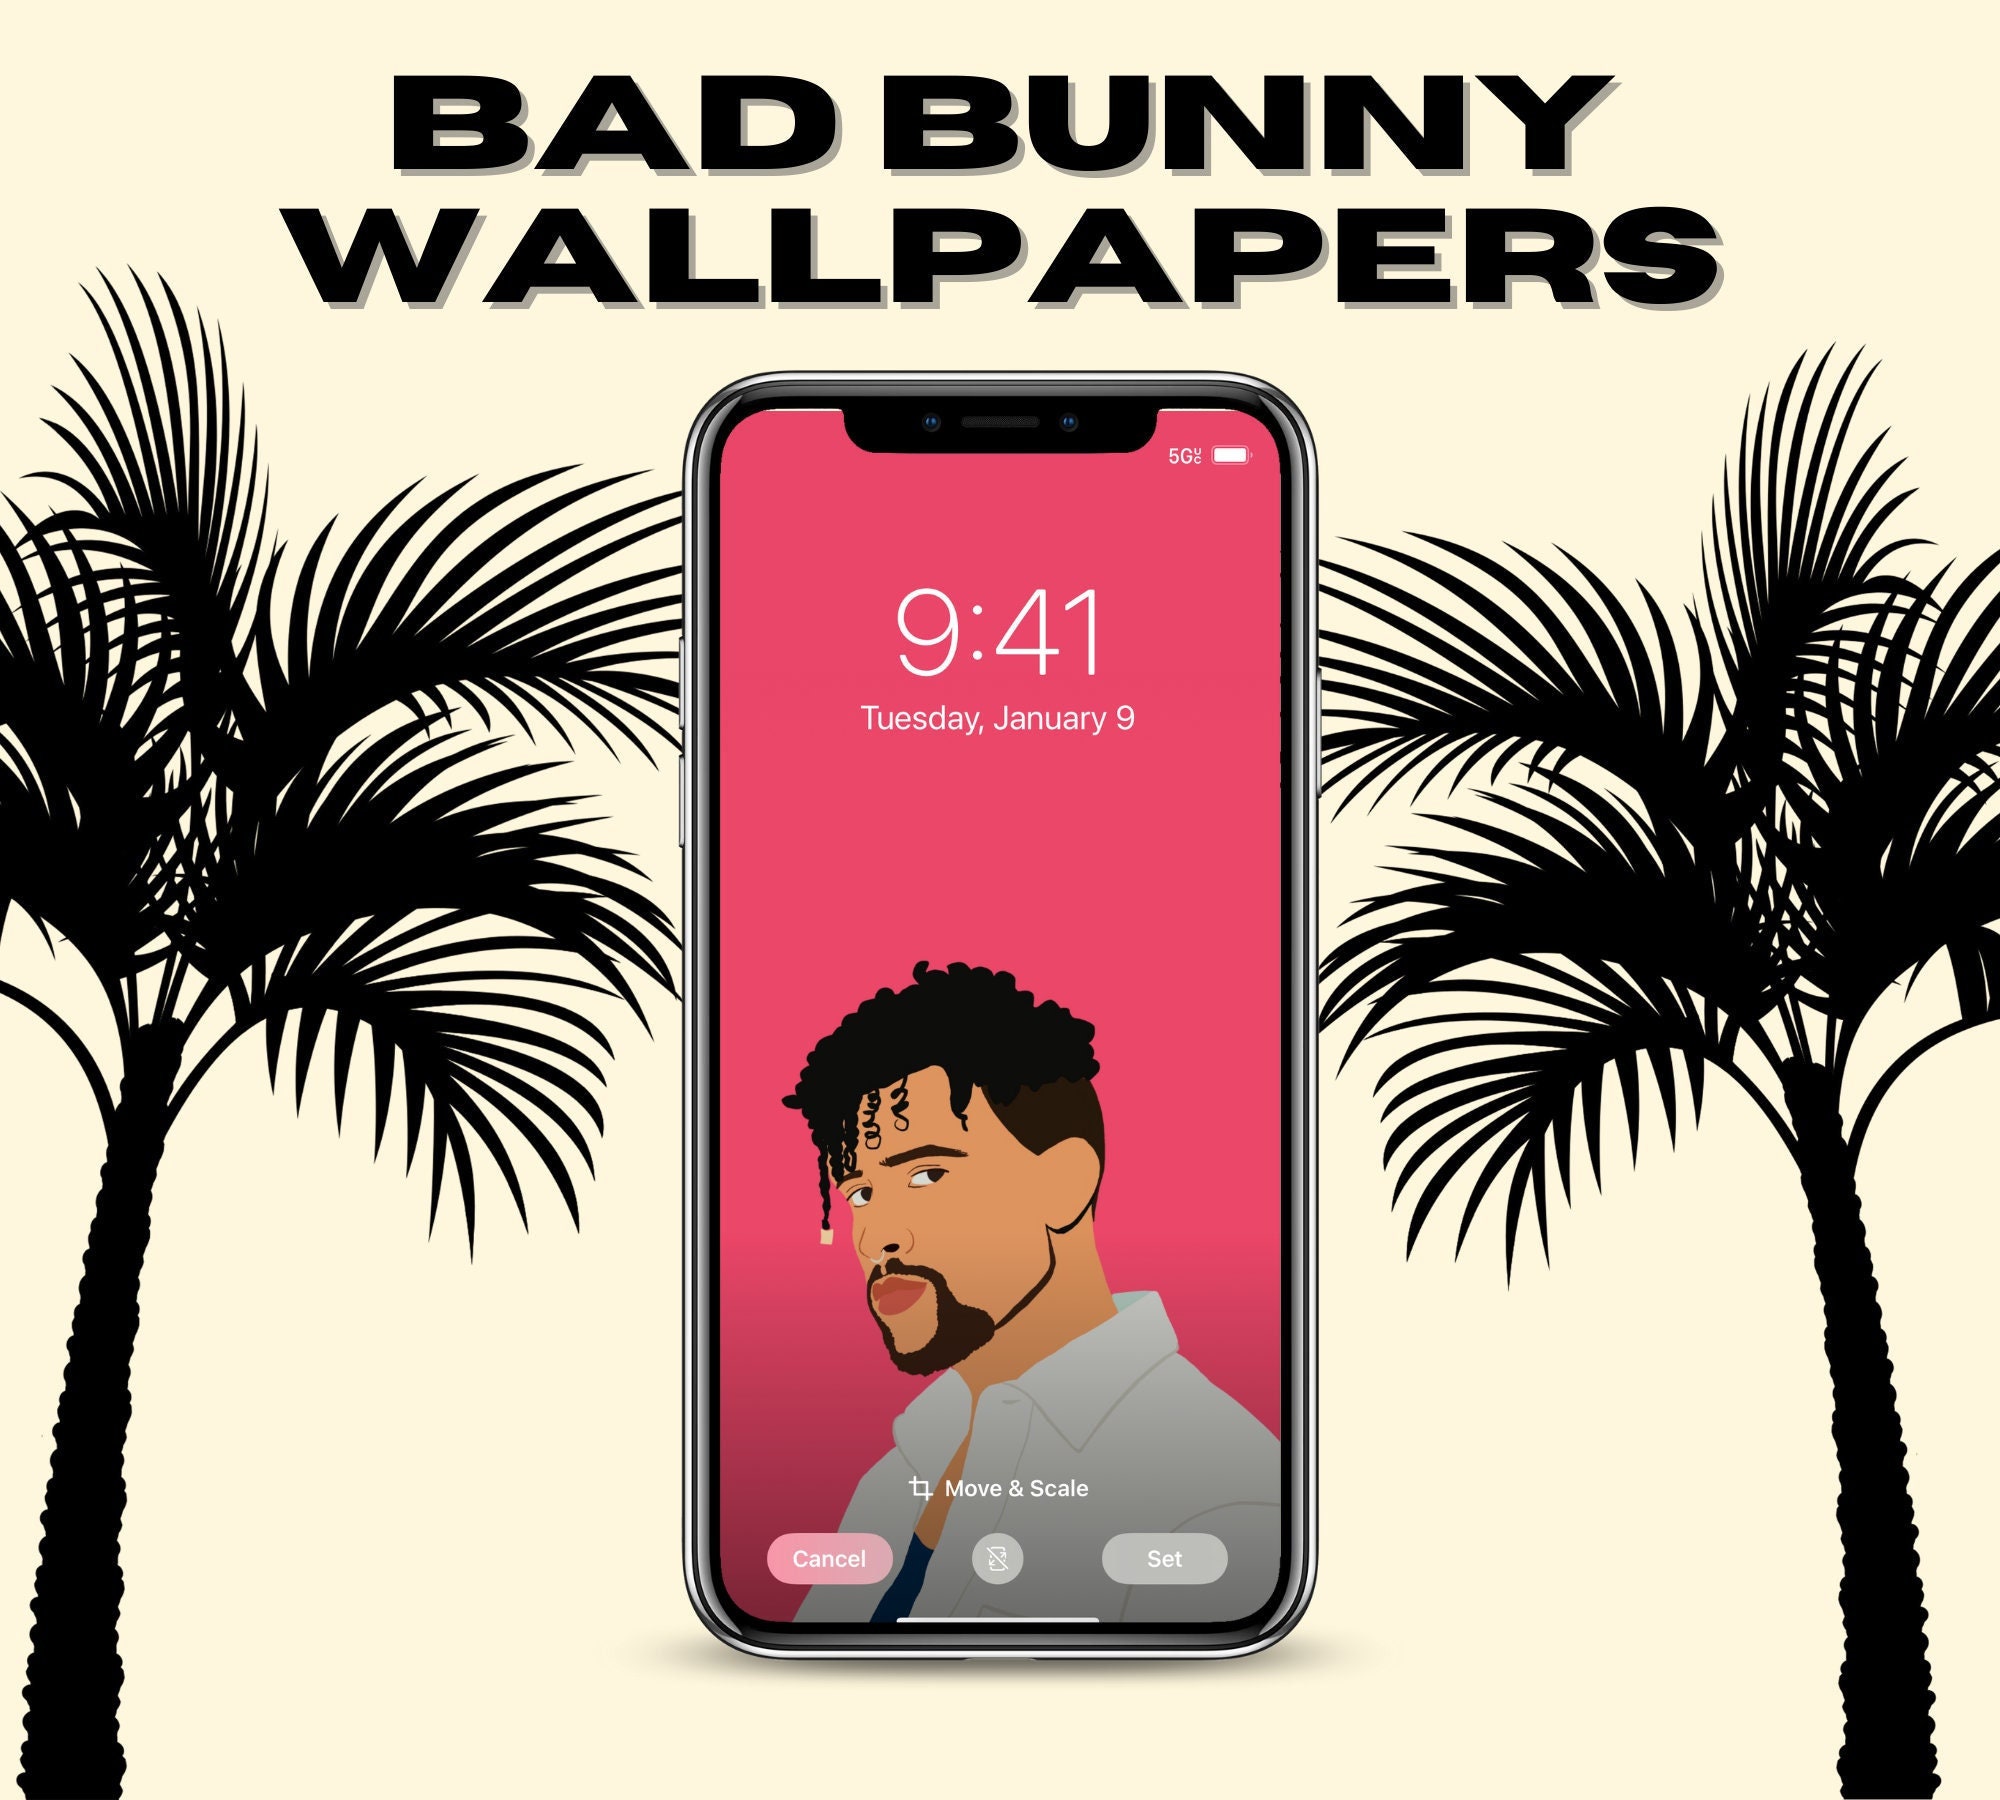 Buy Wallpaper Bad Bunny Online In India -  India